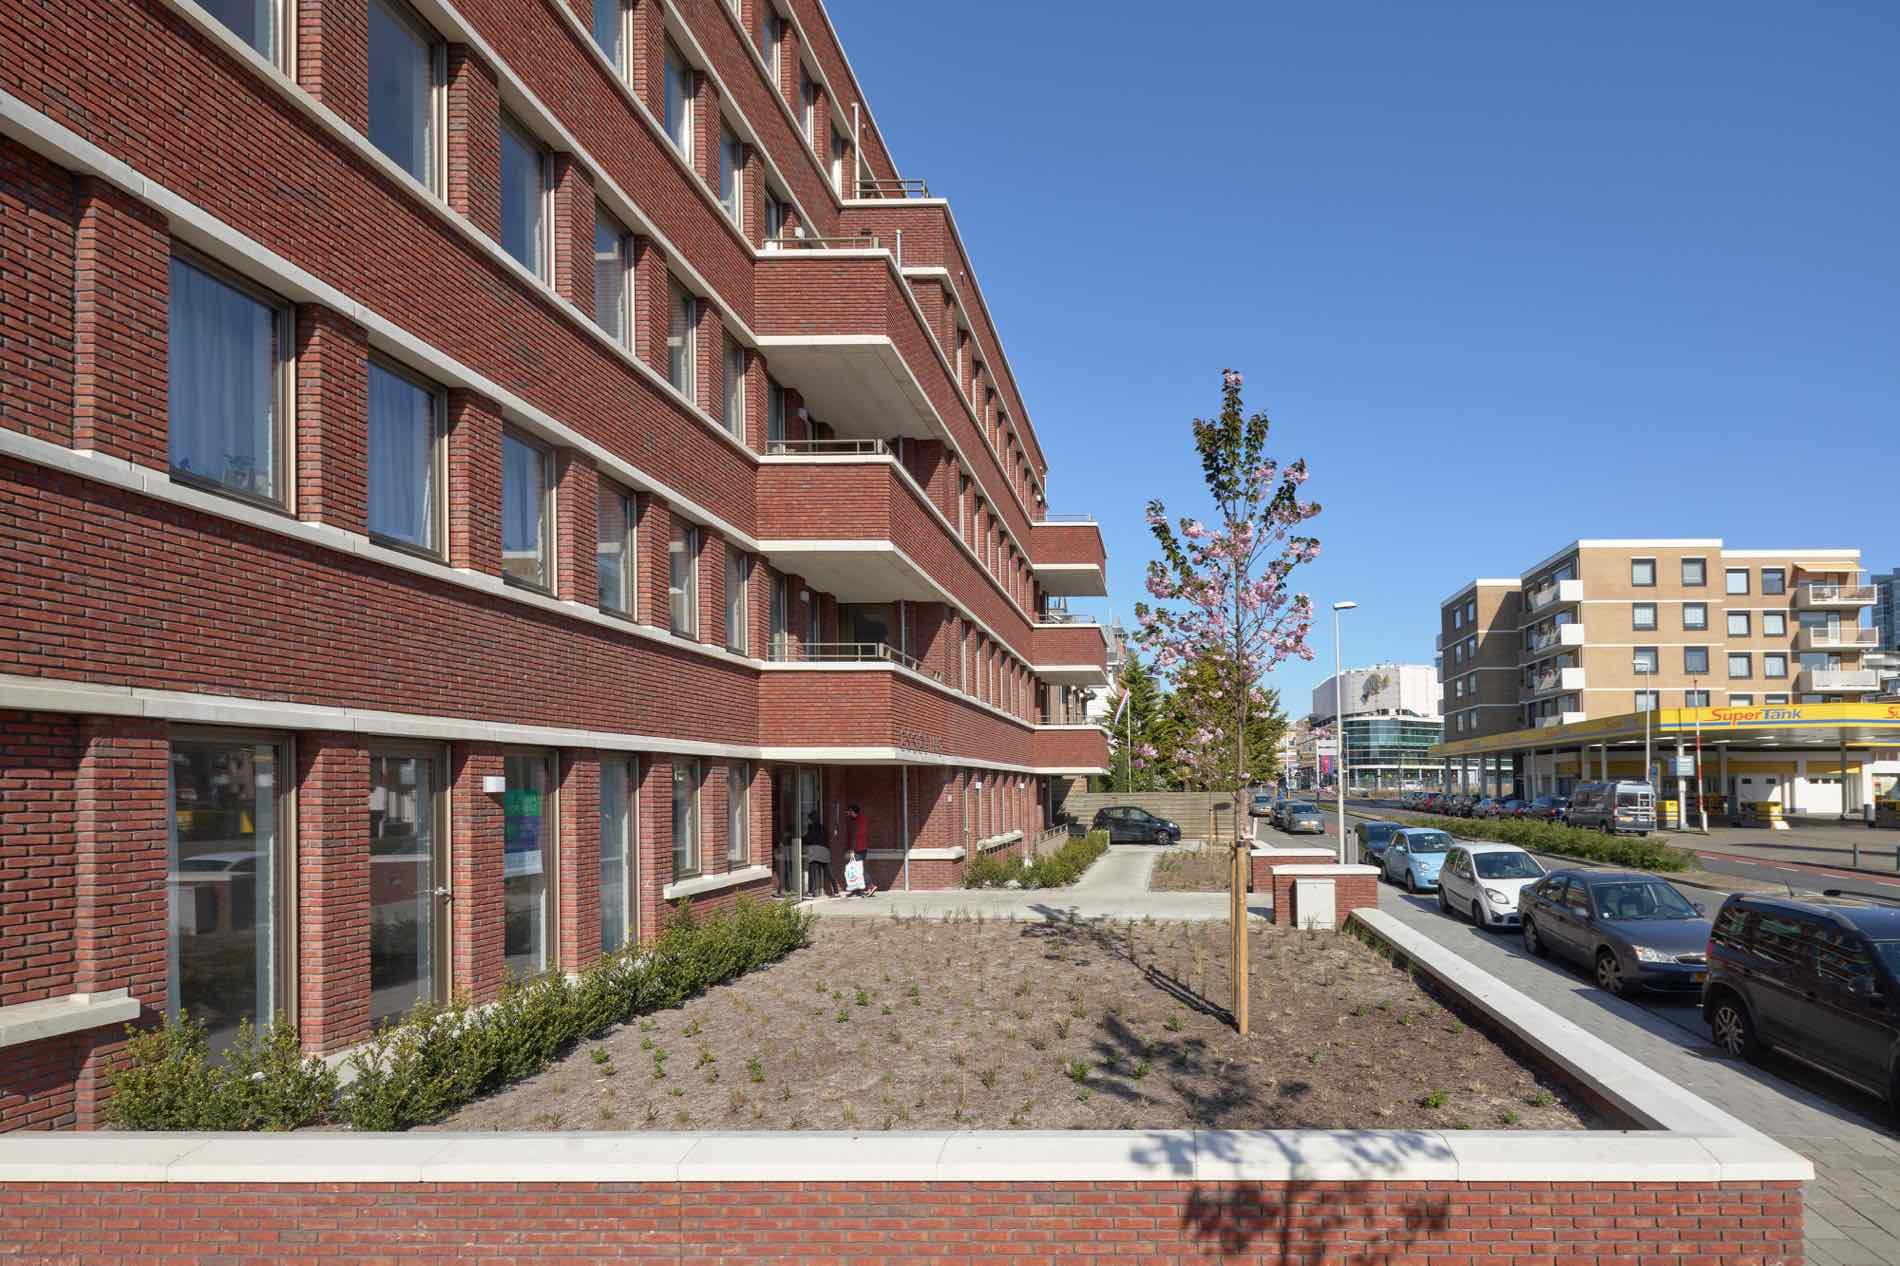 Appartementen Badhuisweg 3 - Geurst & Schulze architecten